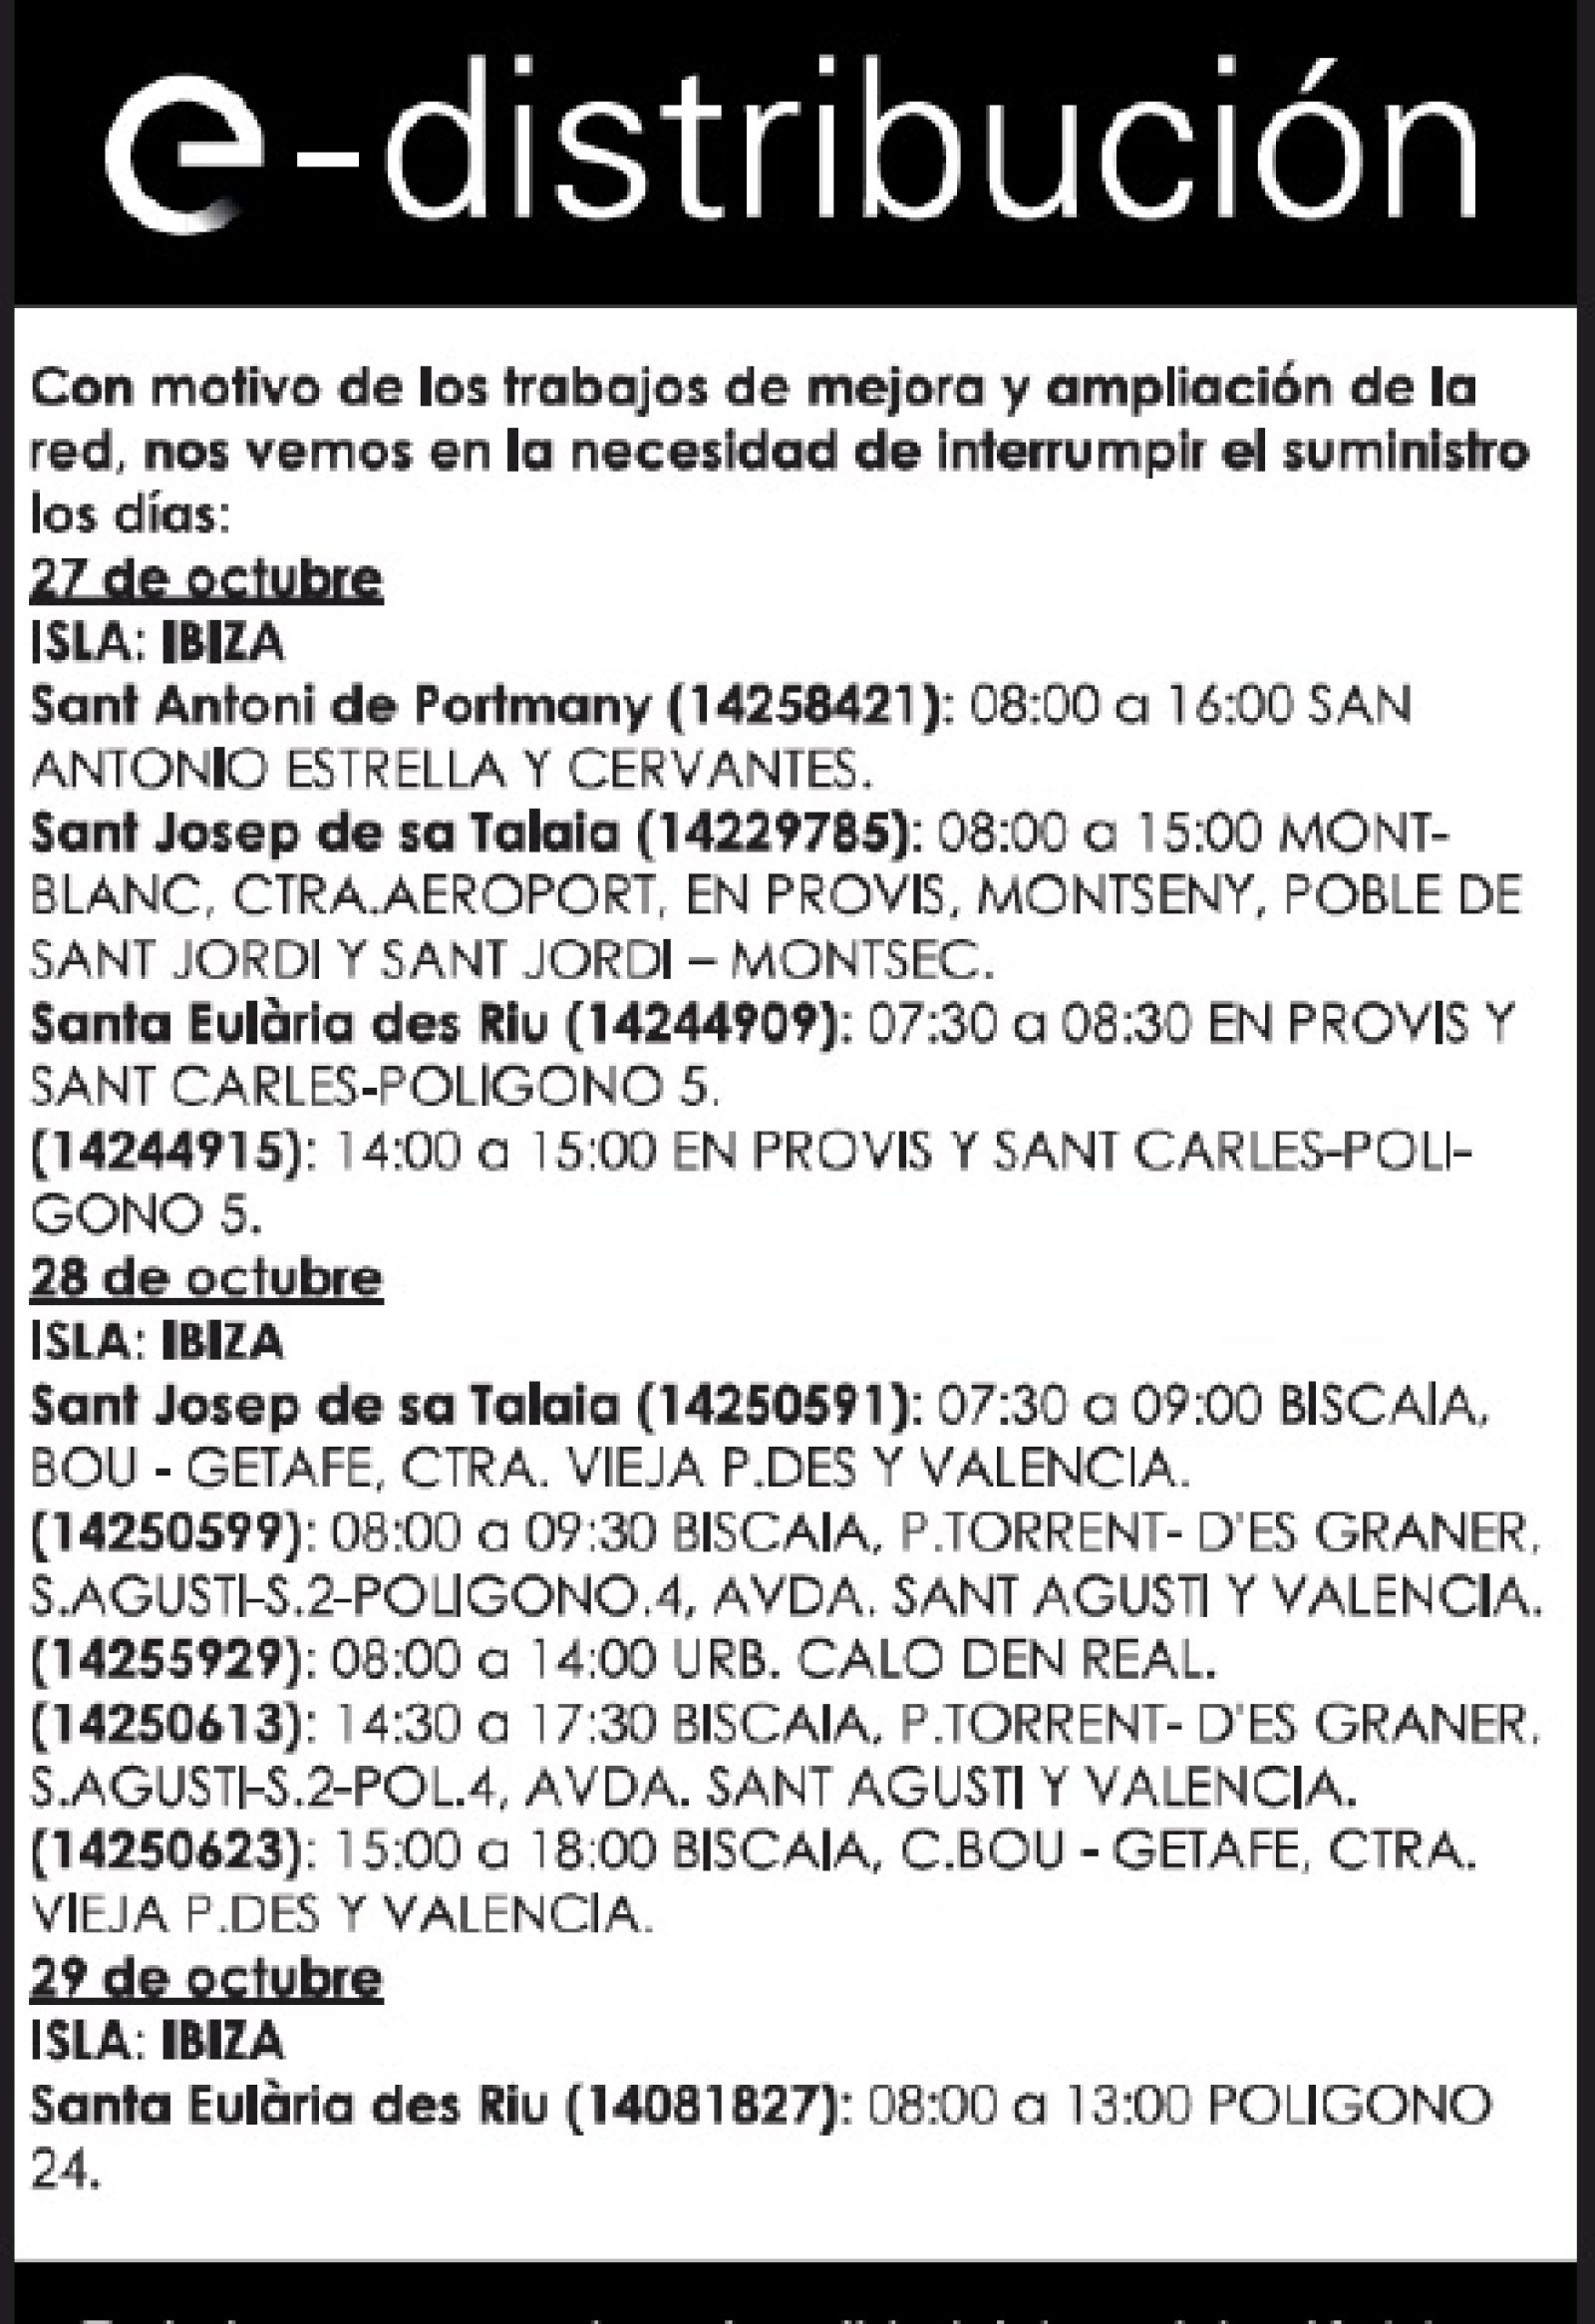 Corte temporal del suministro de energía eléctrica en diferentes zonas de Santa Eulària des Riu los días 27 y 29 de octubre